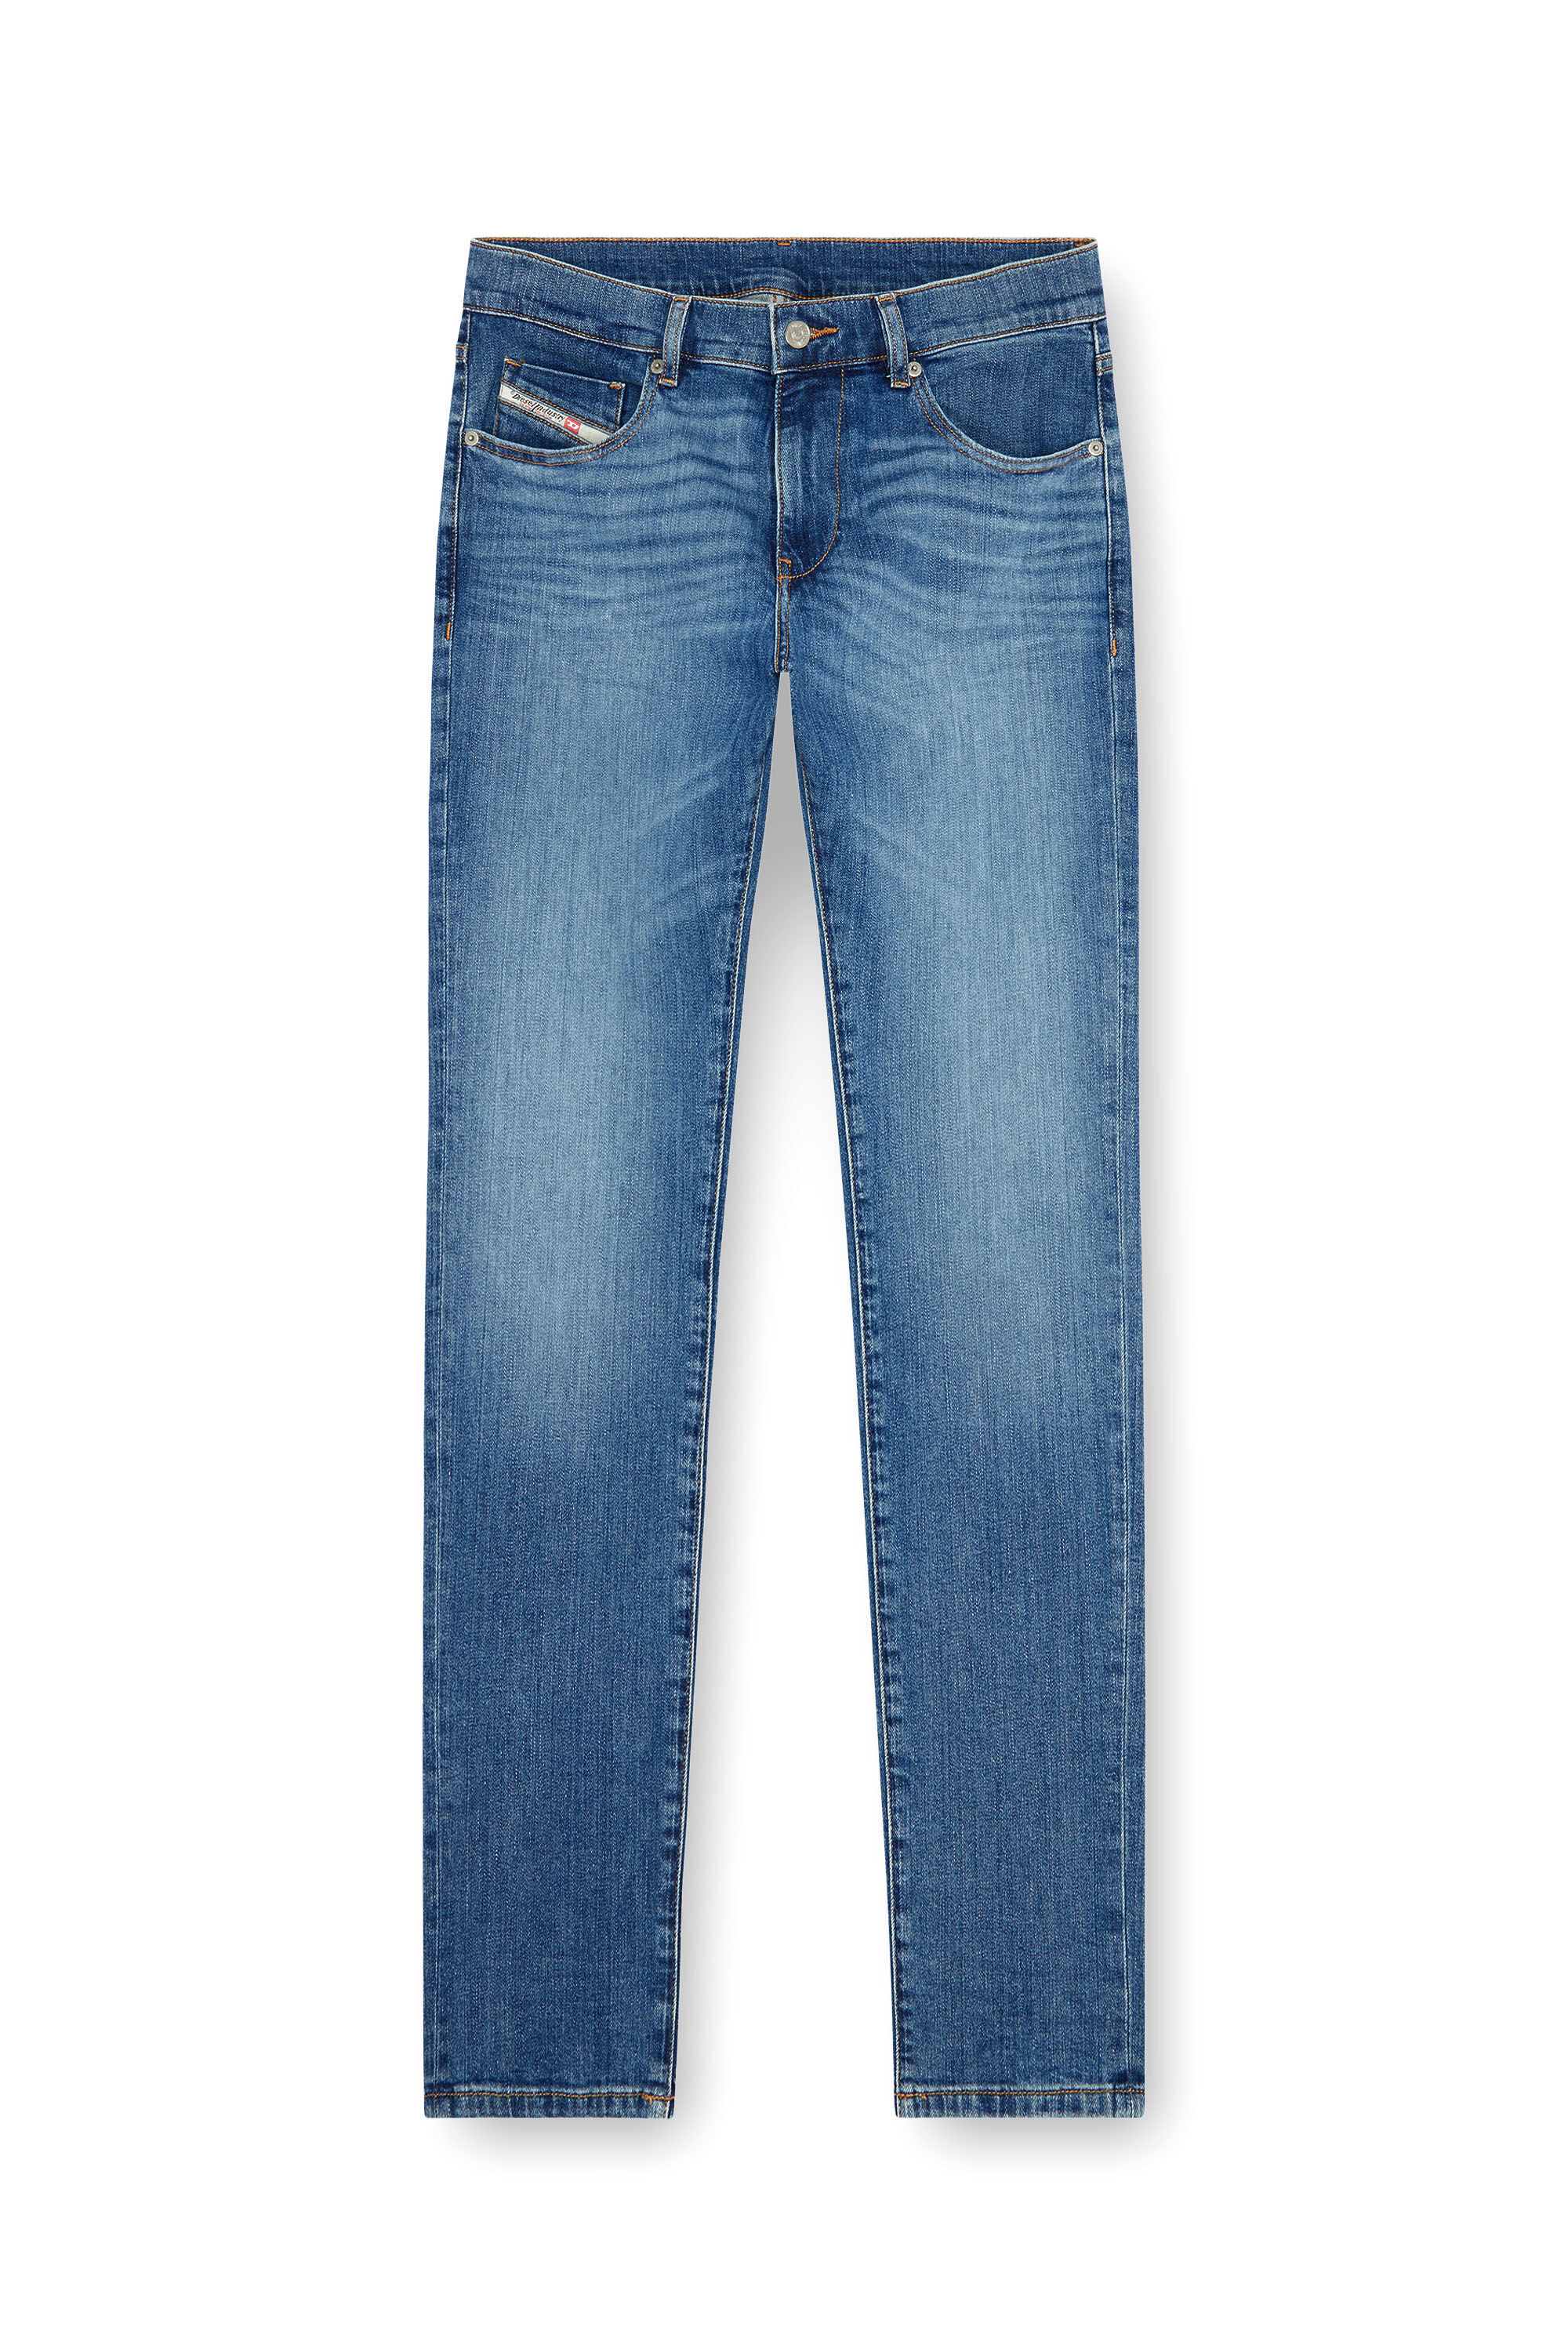 Diesel - Slim Jeans 2019 D-Strukt 0KIAL, Hombre Slim Jeans - 2019 D-Strukt in Azul marino - Image 1